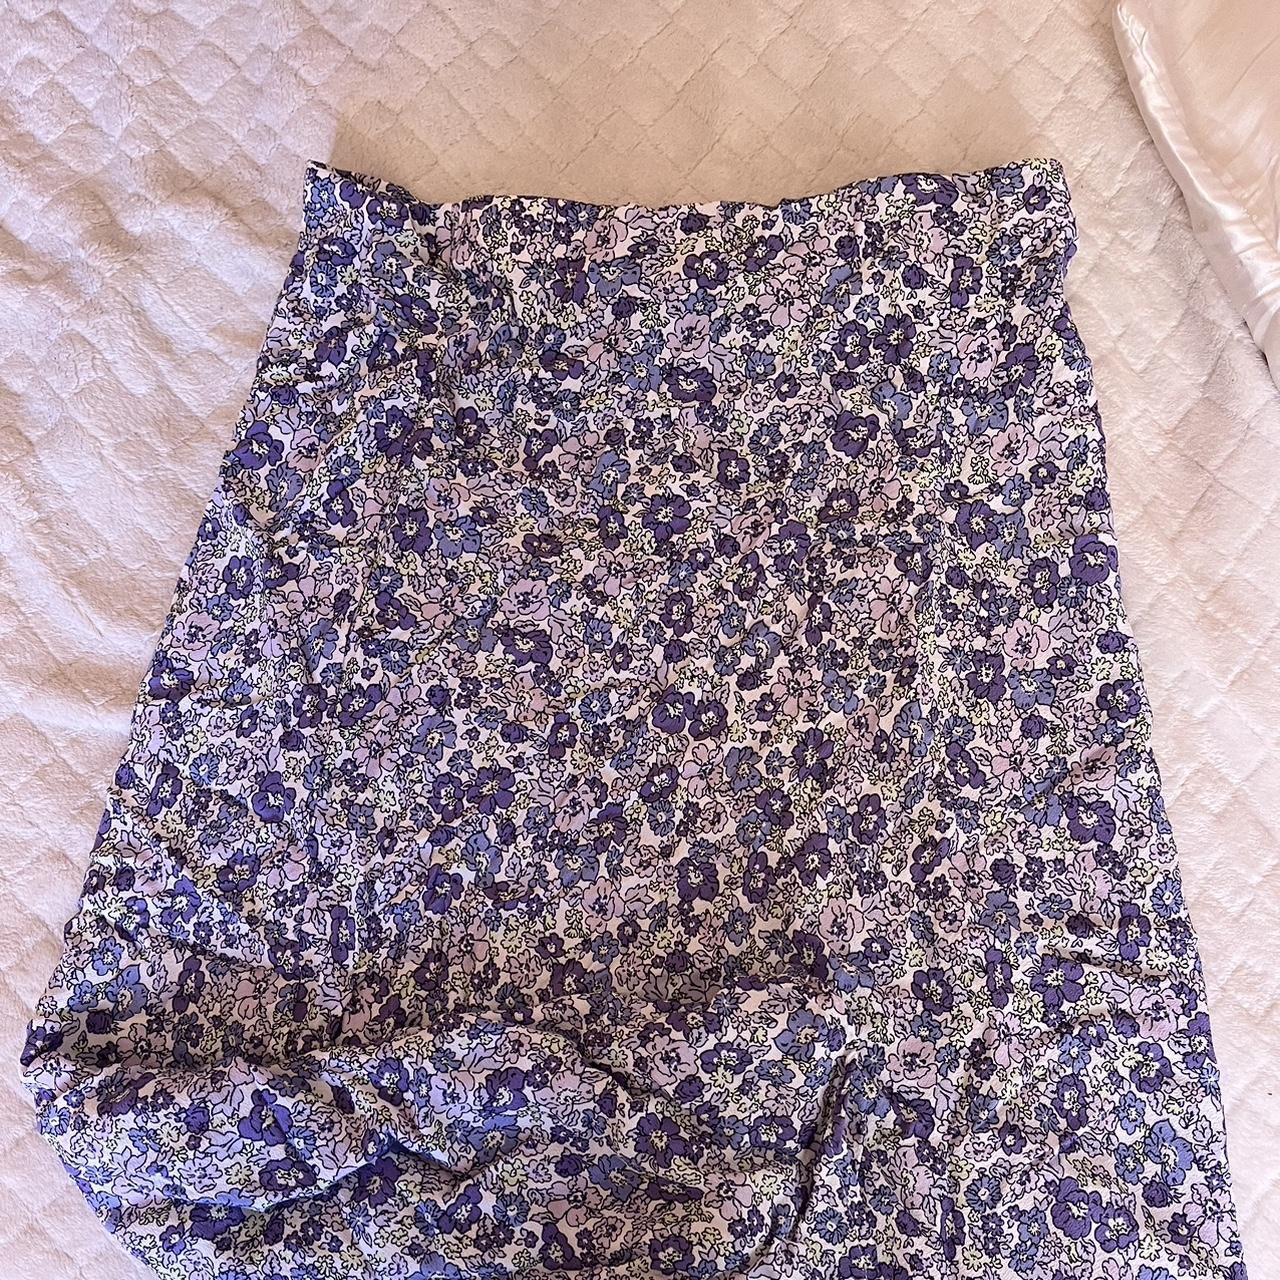 cotton on long floral skirt fits an XL worn $12 - Depop